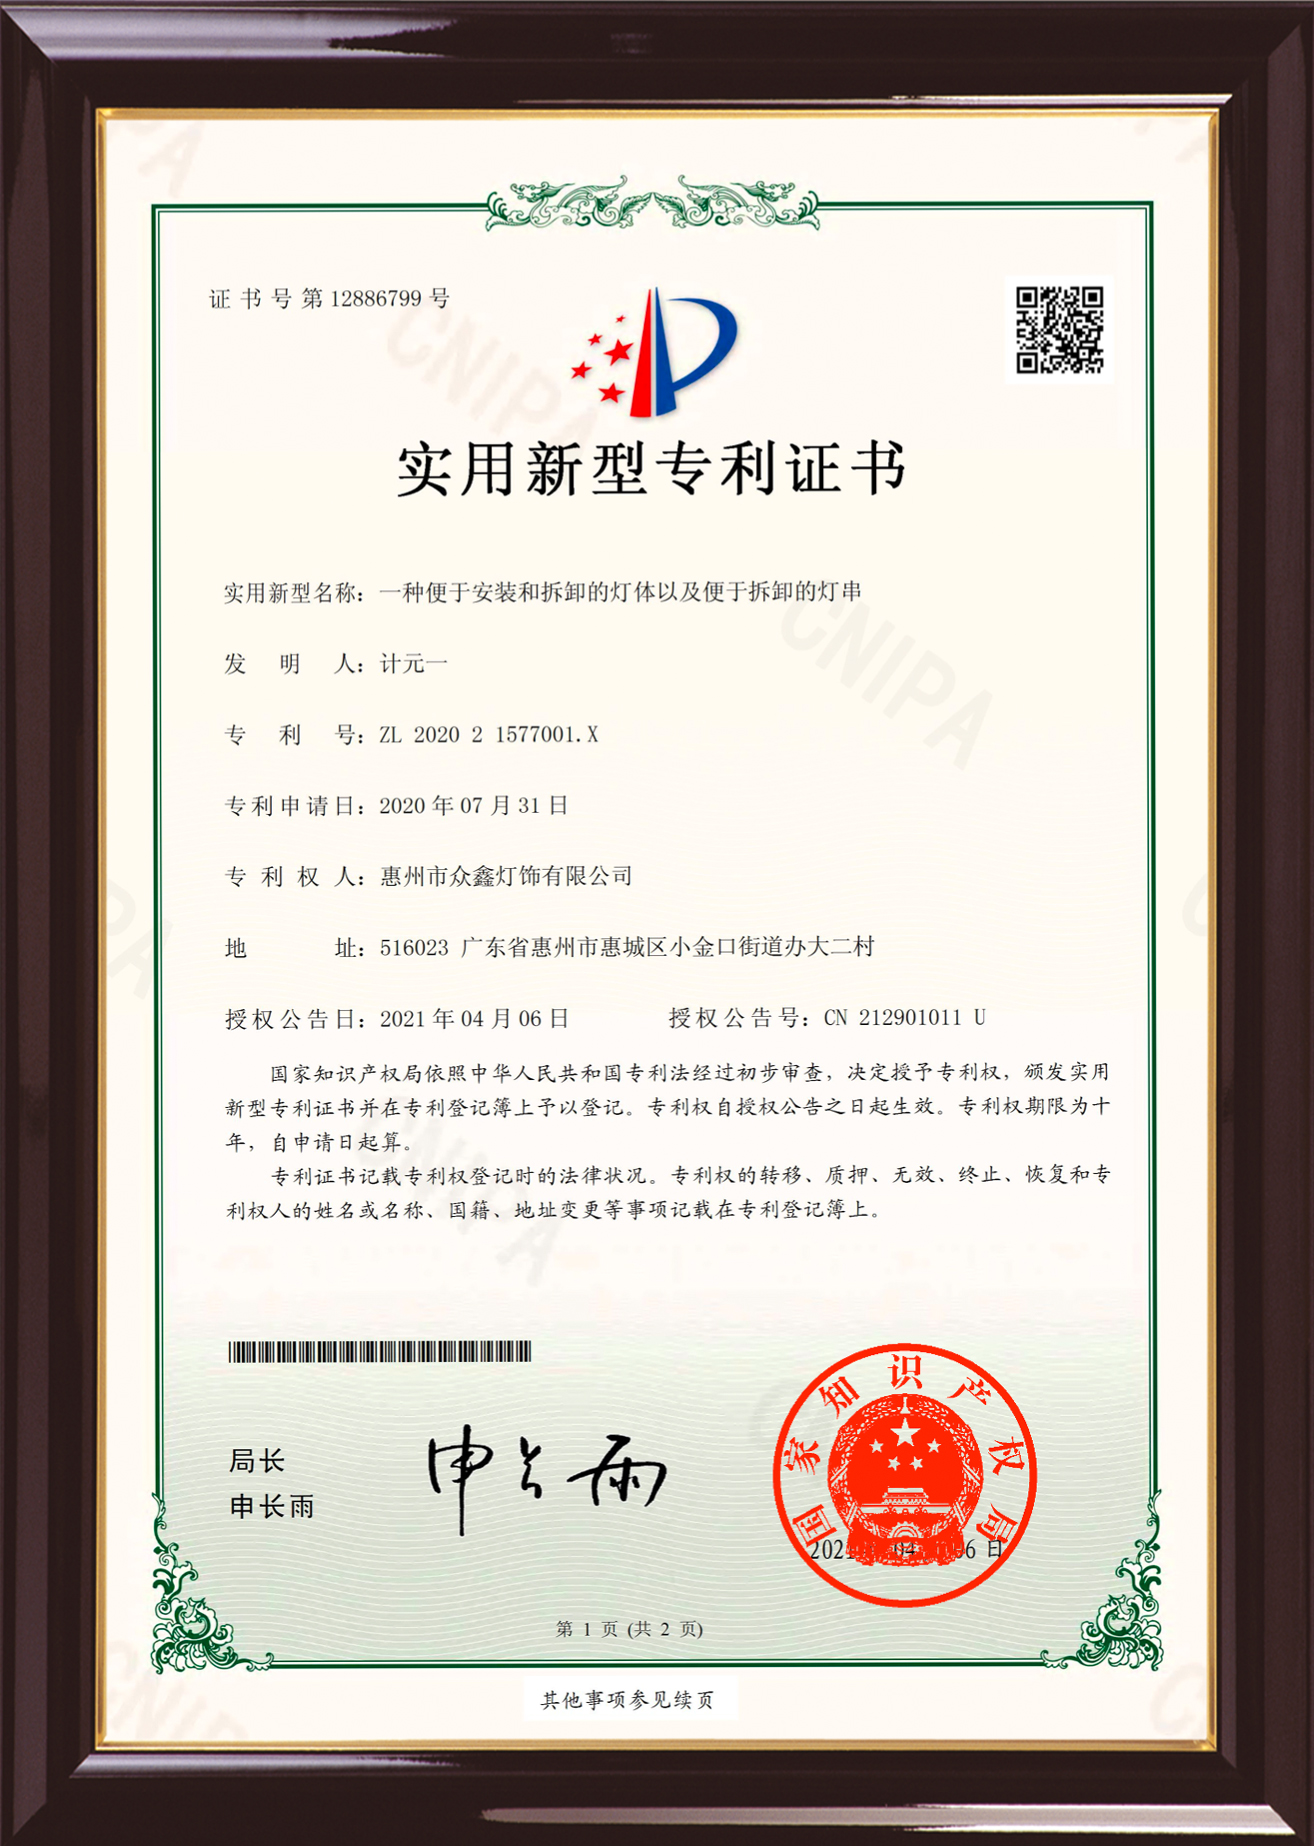 Certificat de patent de model d'utilitat